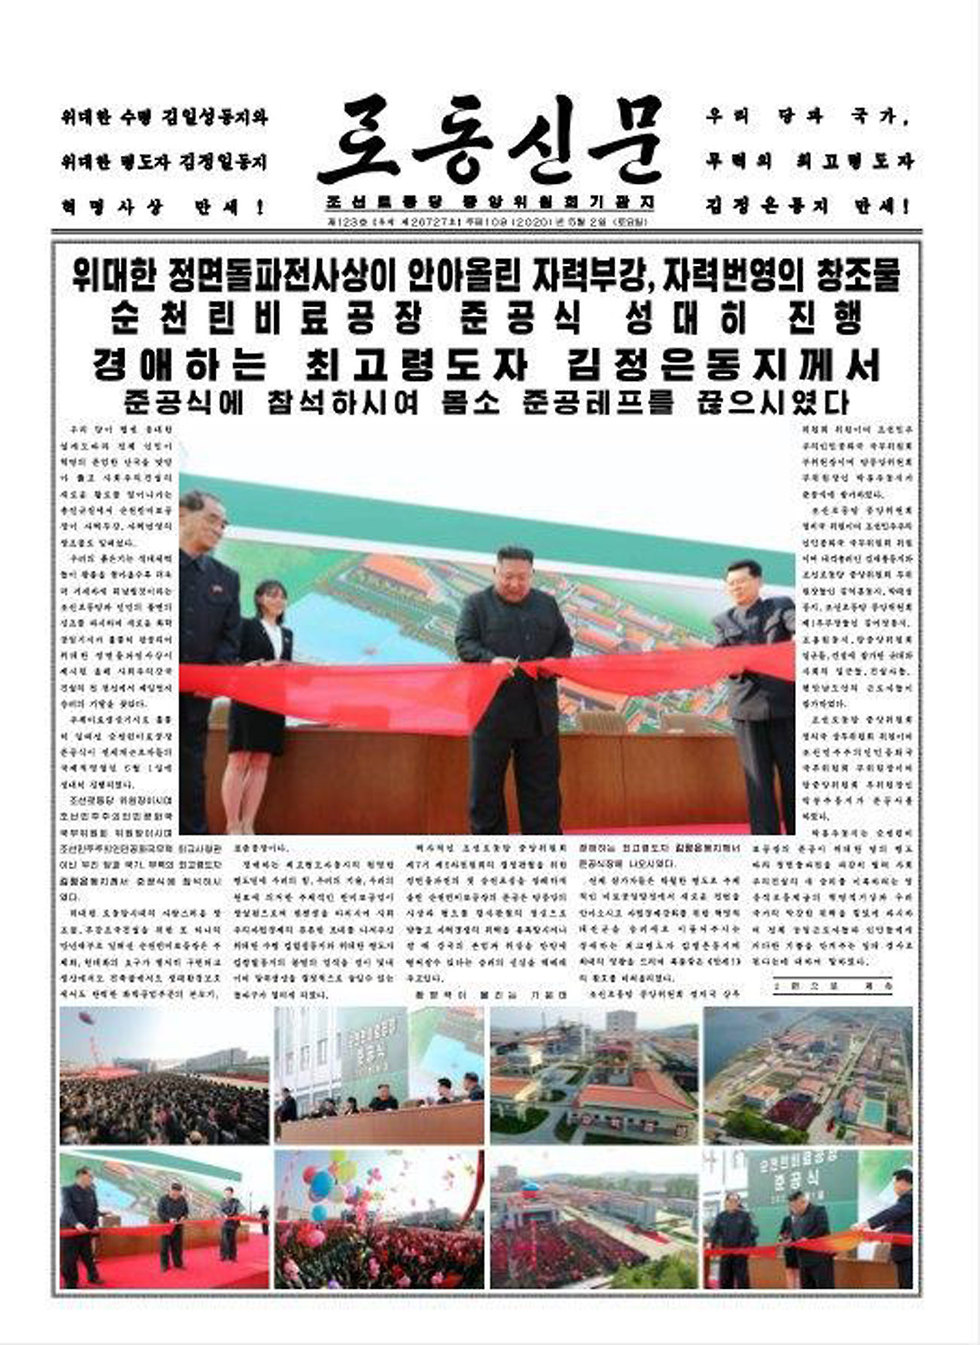 רודונג סינמון פרסם תמונות של קים ג'ונג און צפון קוריאה ()